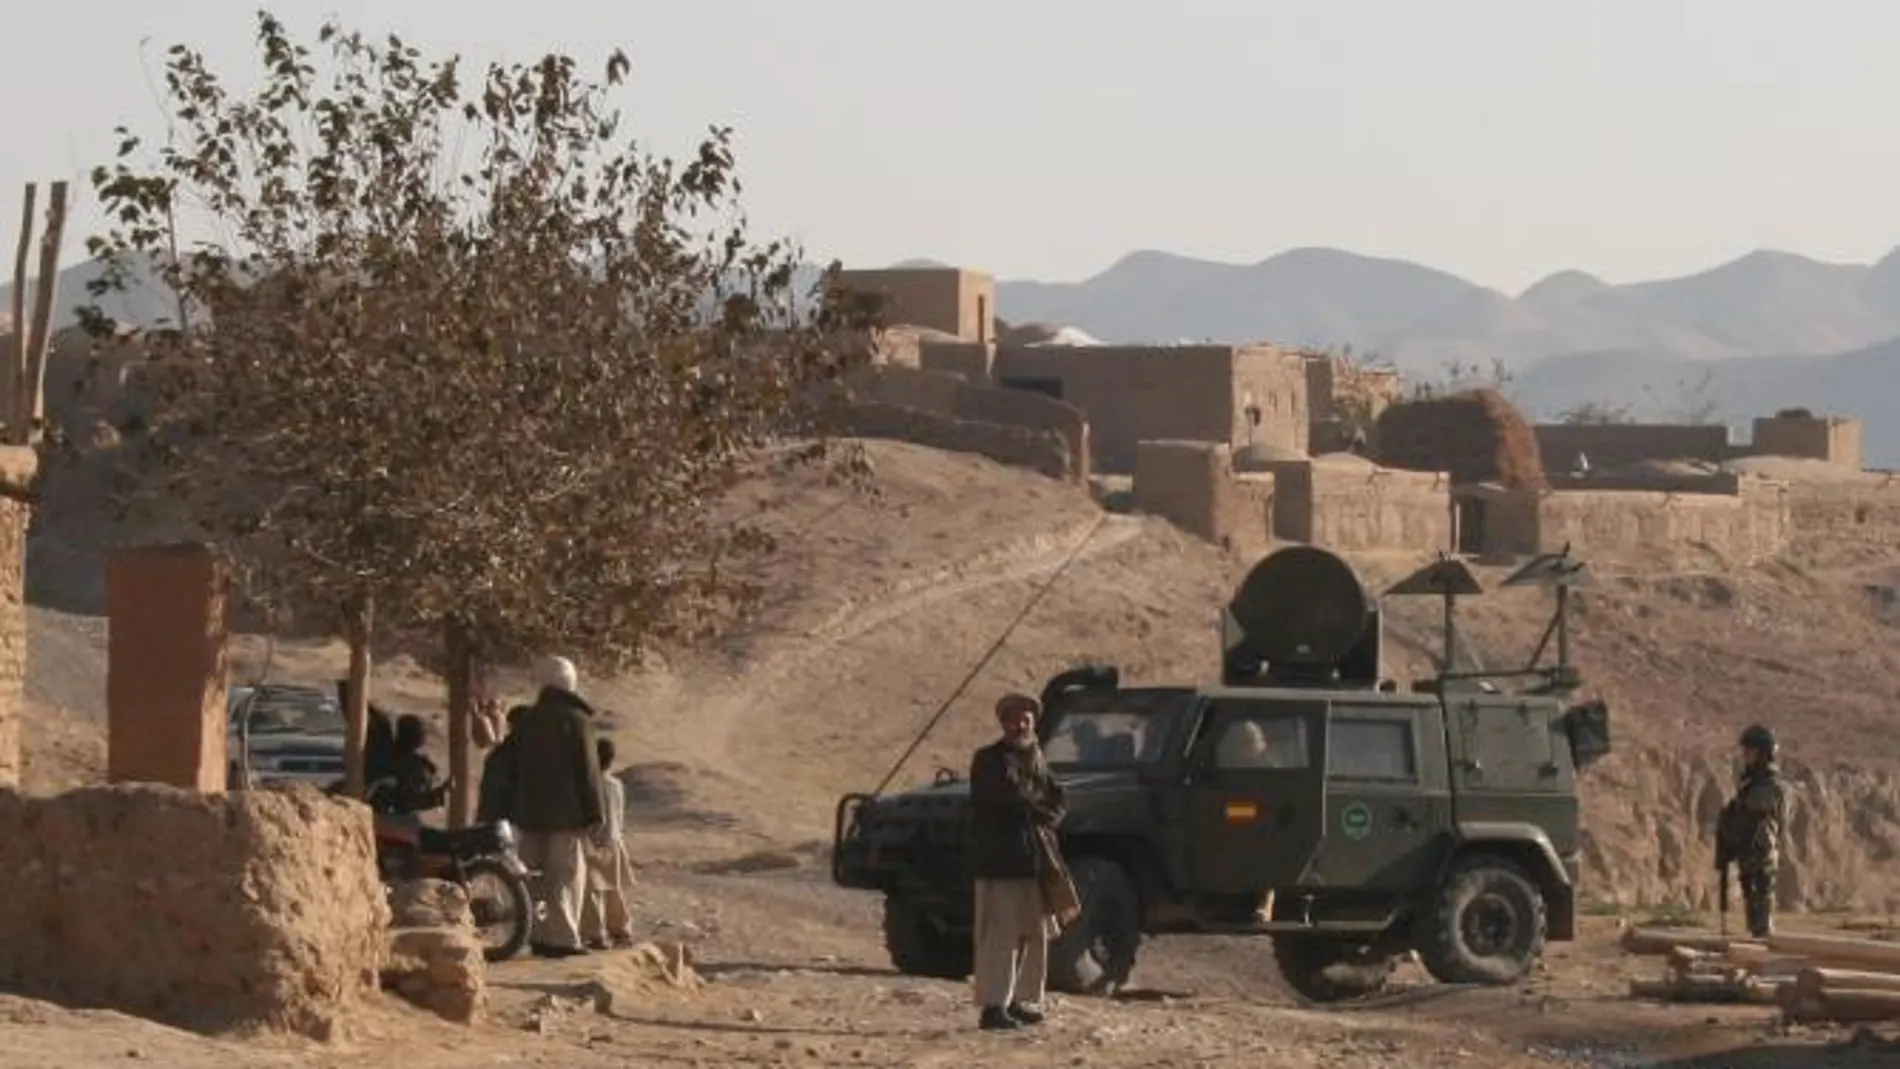 Un blindado del tipo "Lince", como el afectado por el artefacto hoy en Afganistán